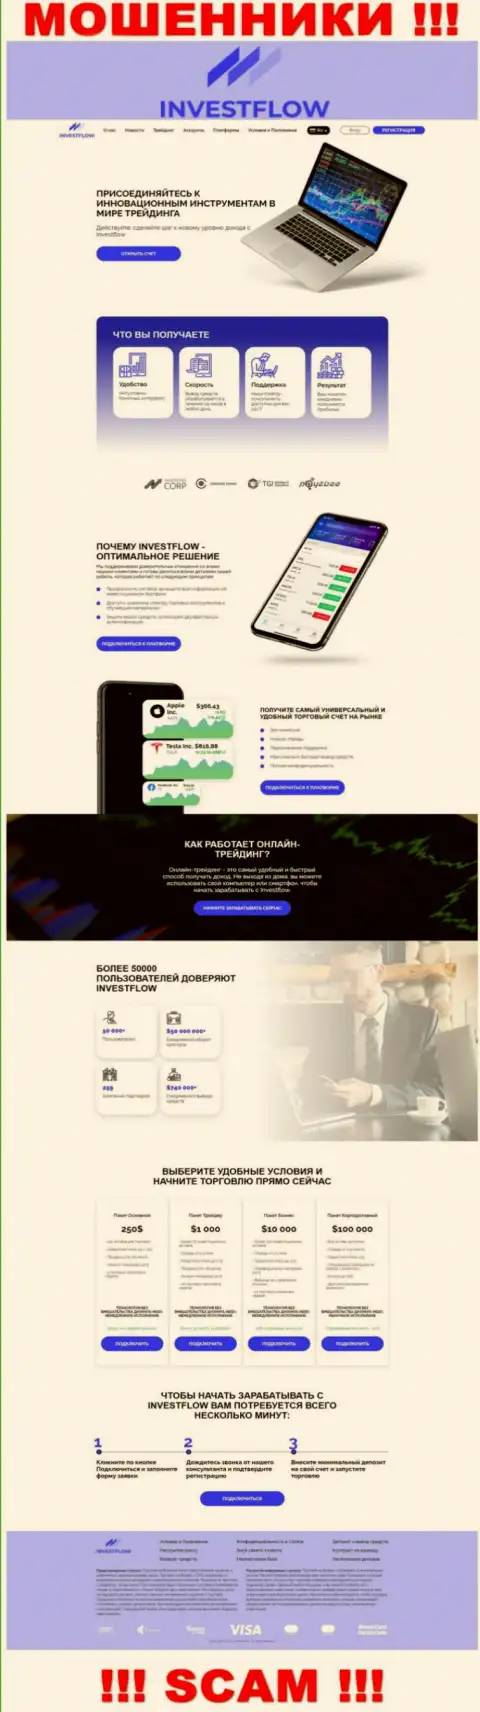 Скрин официального веб-сервиса Invest-Flow - Invest-Flow Io